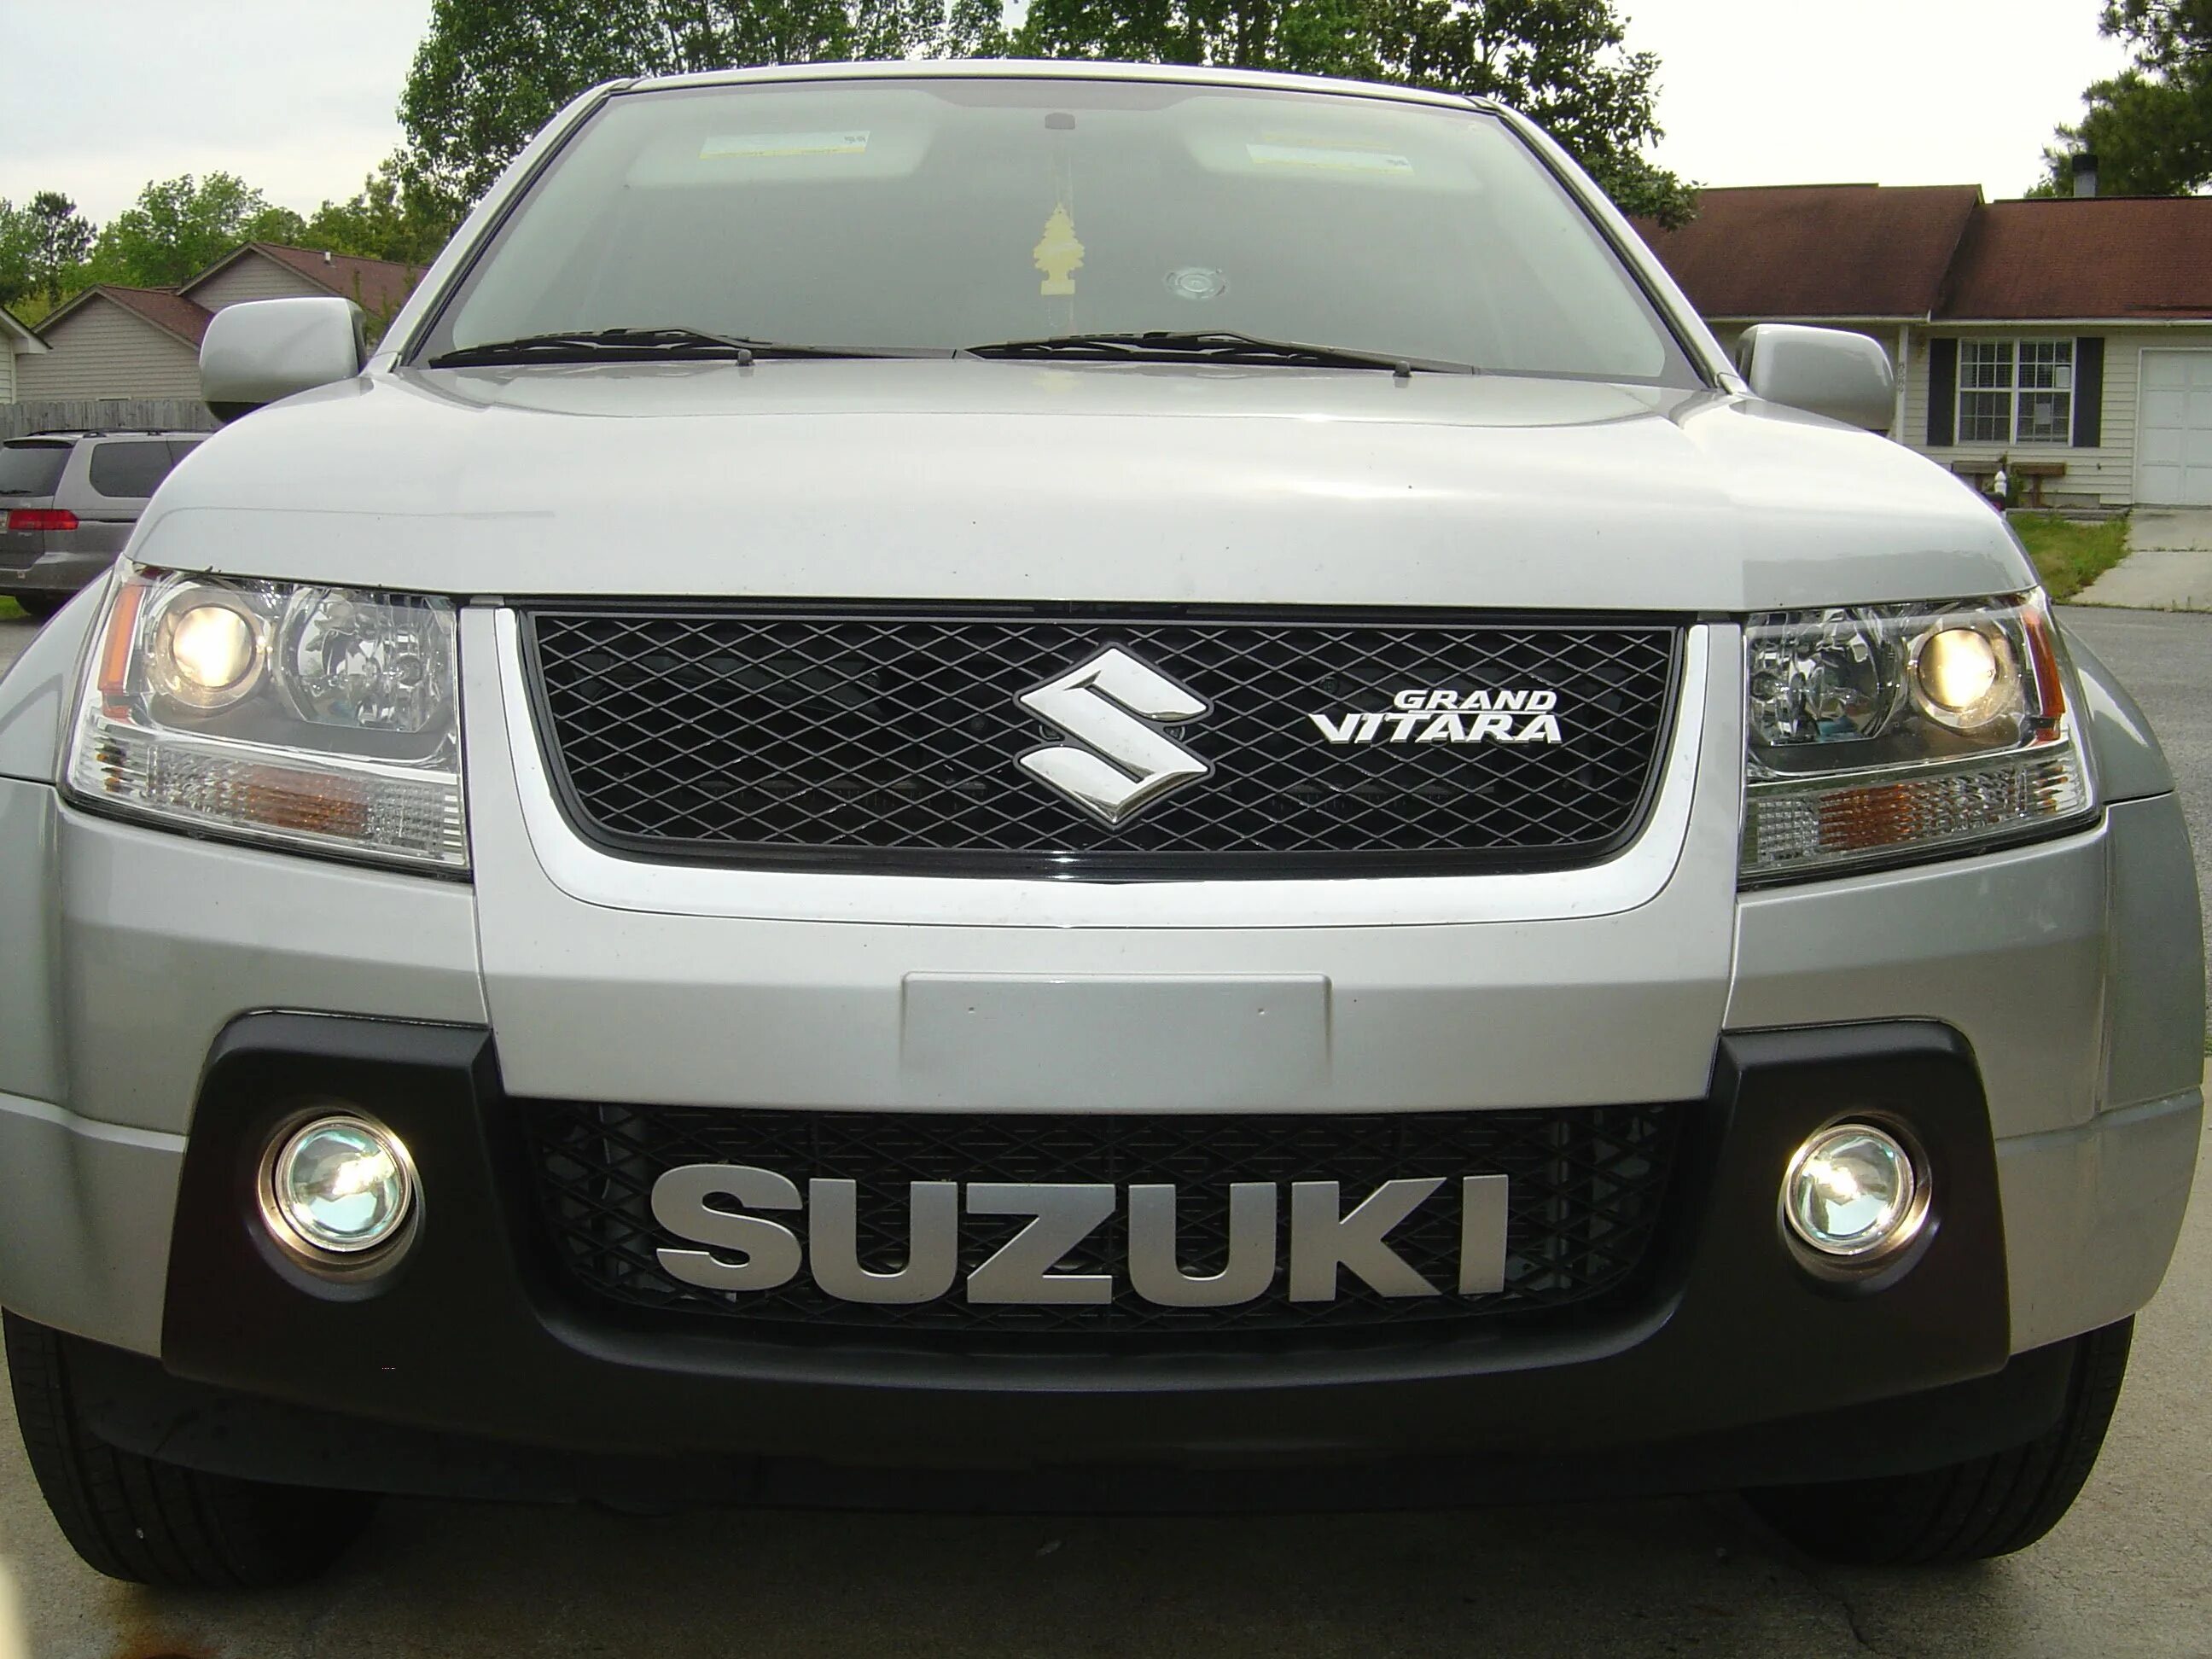 Suzuki grand vitara на авито. Suzuki Grand Vitara Tuning. Suzuki Grand Vitara тюнинг. Suzuki Grand Vitara 2008 тюнинг. Обвес на Suzuki Grand Vitara 3.